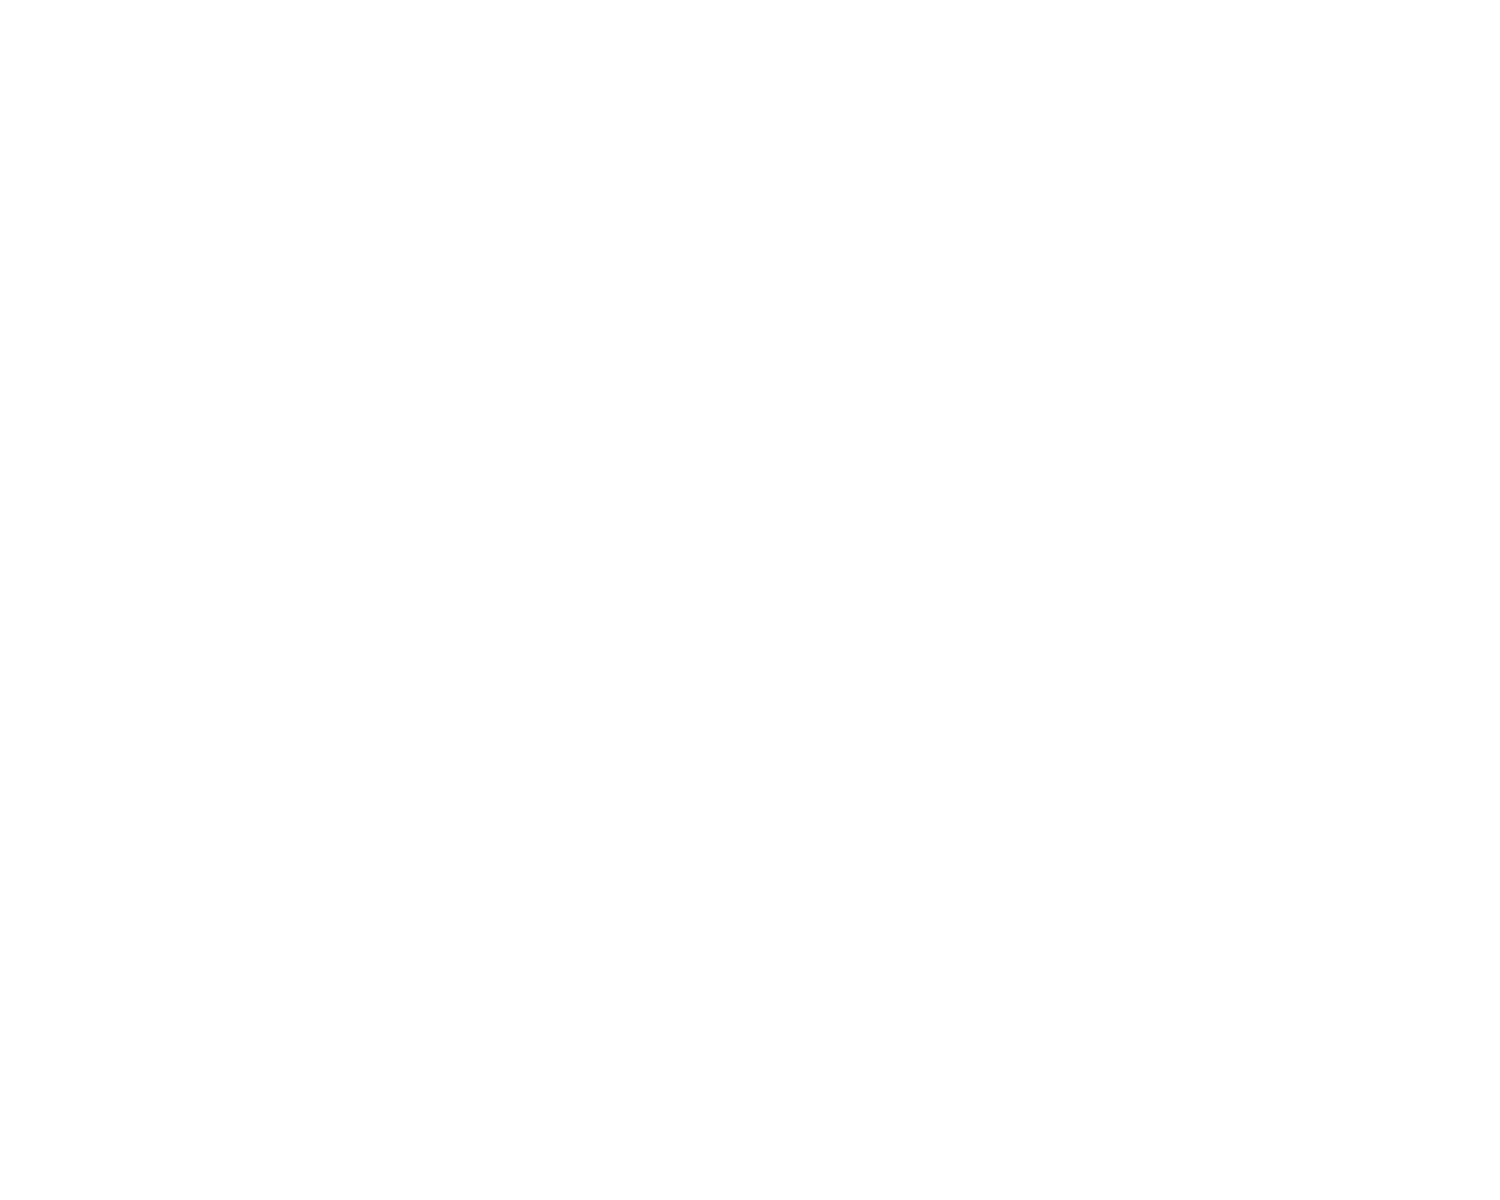 Cine Kit List